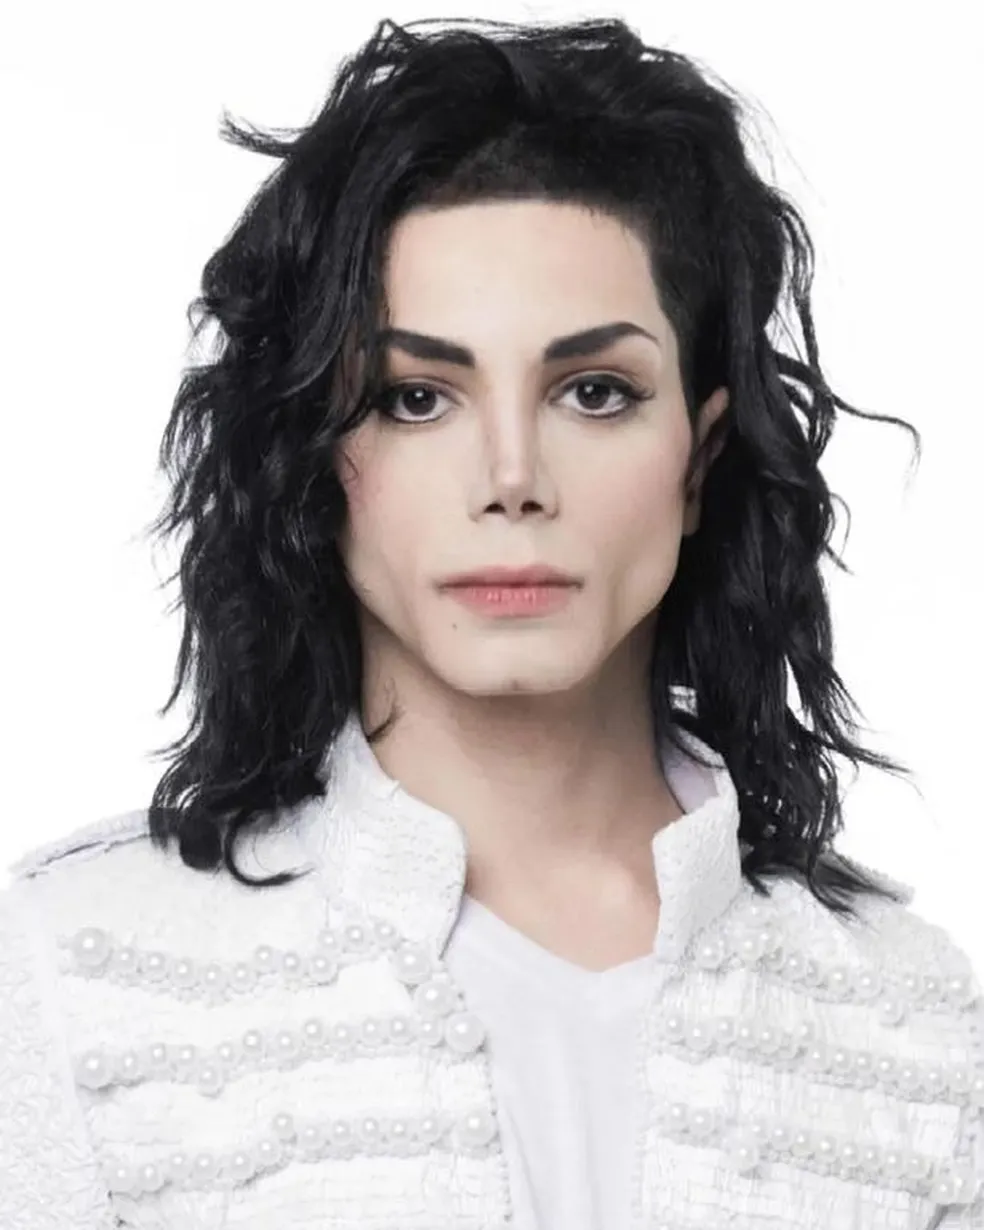 Fã quer se parecer o máximo que puder com Michael Jackson